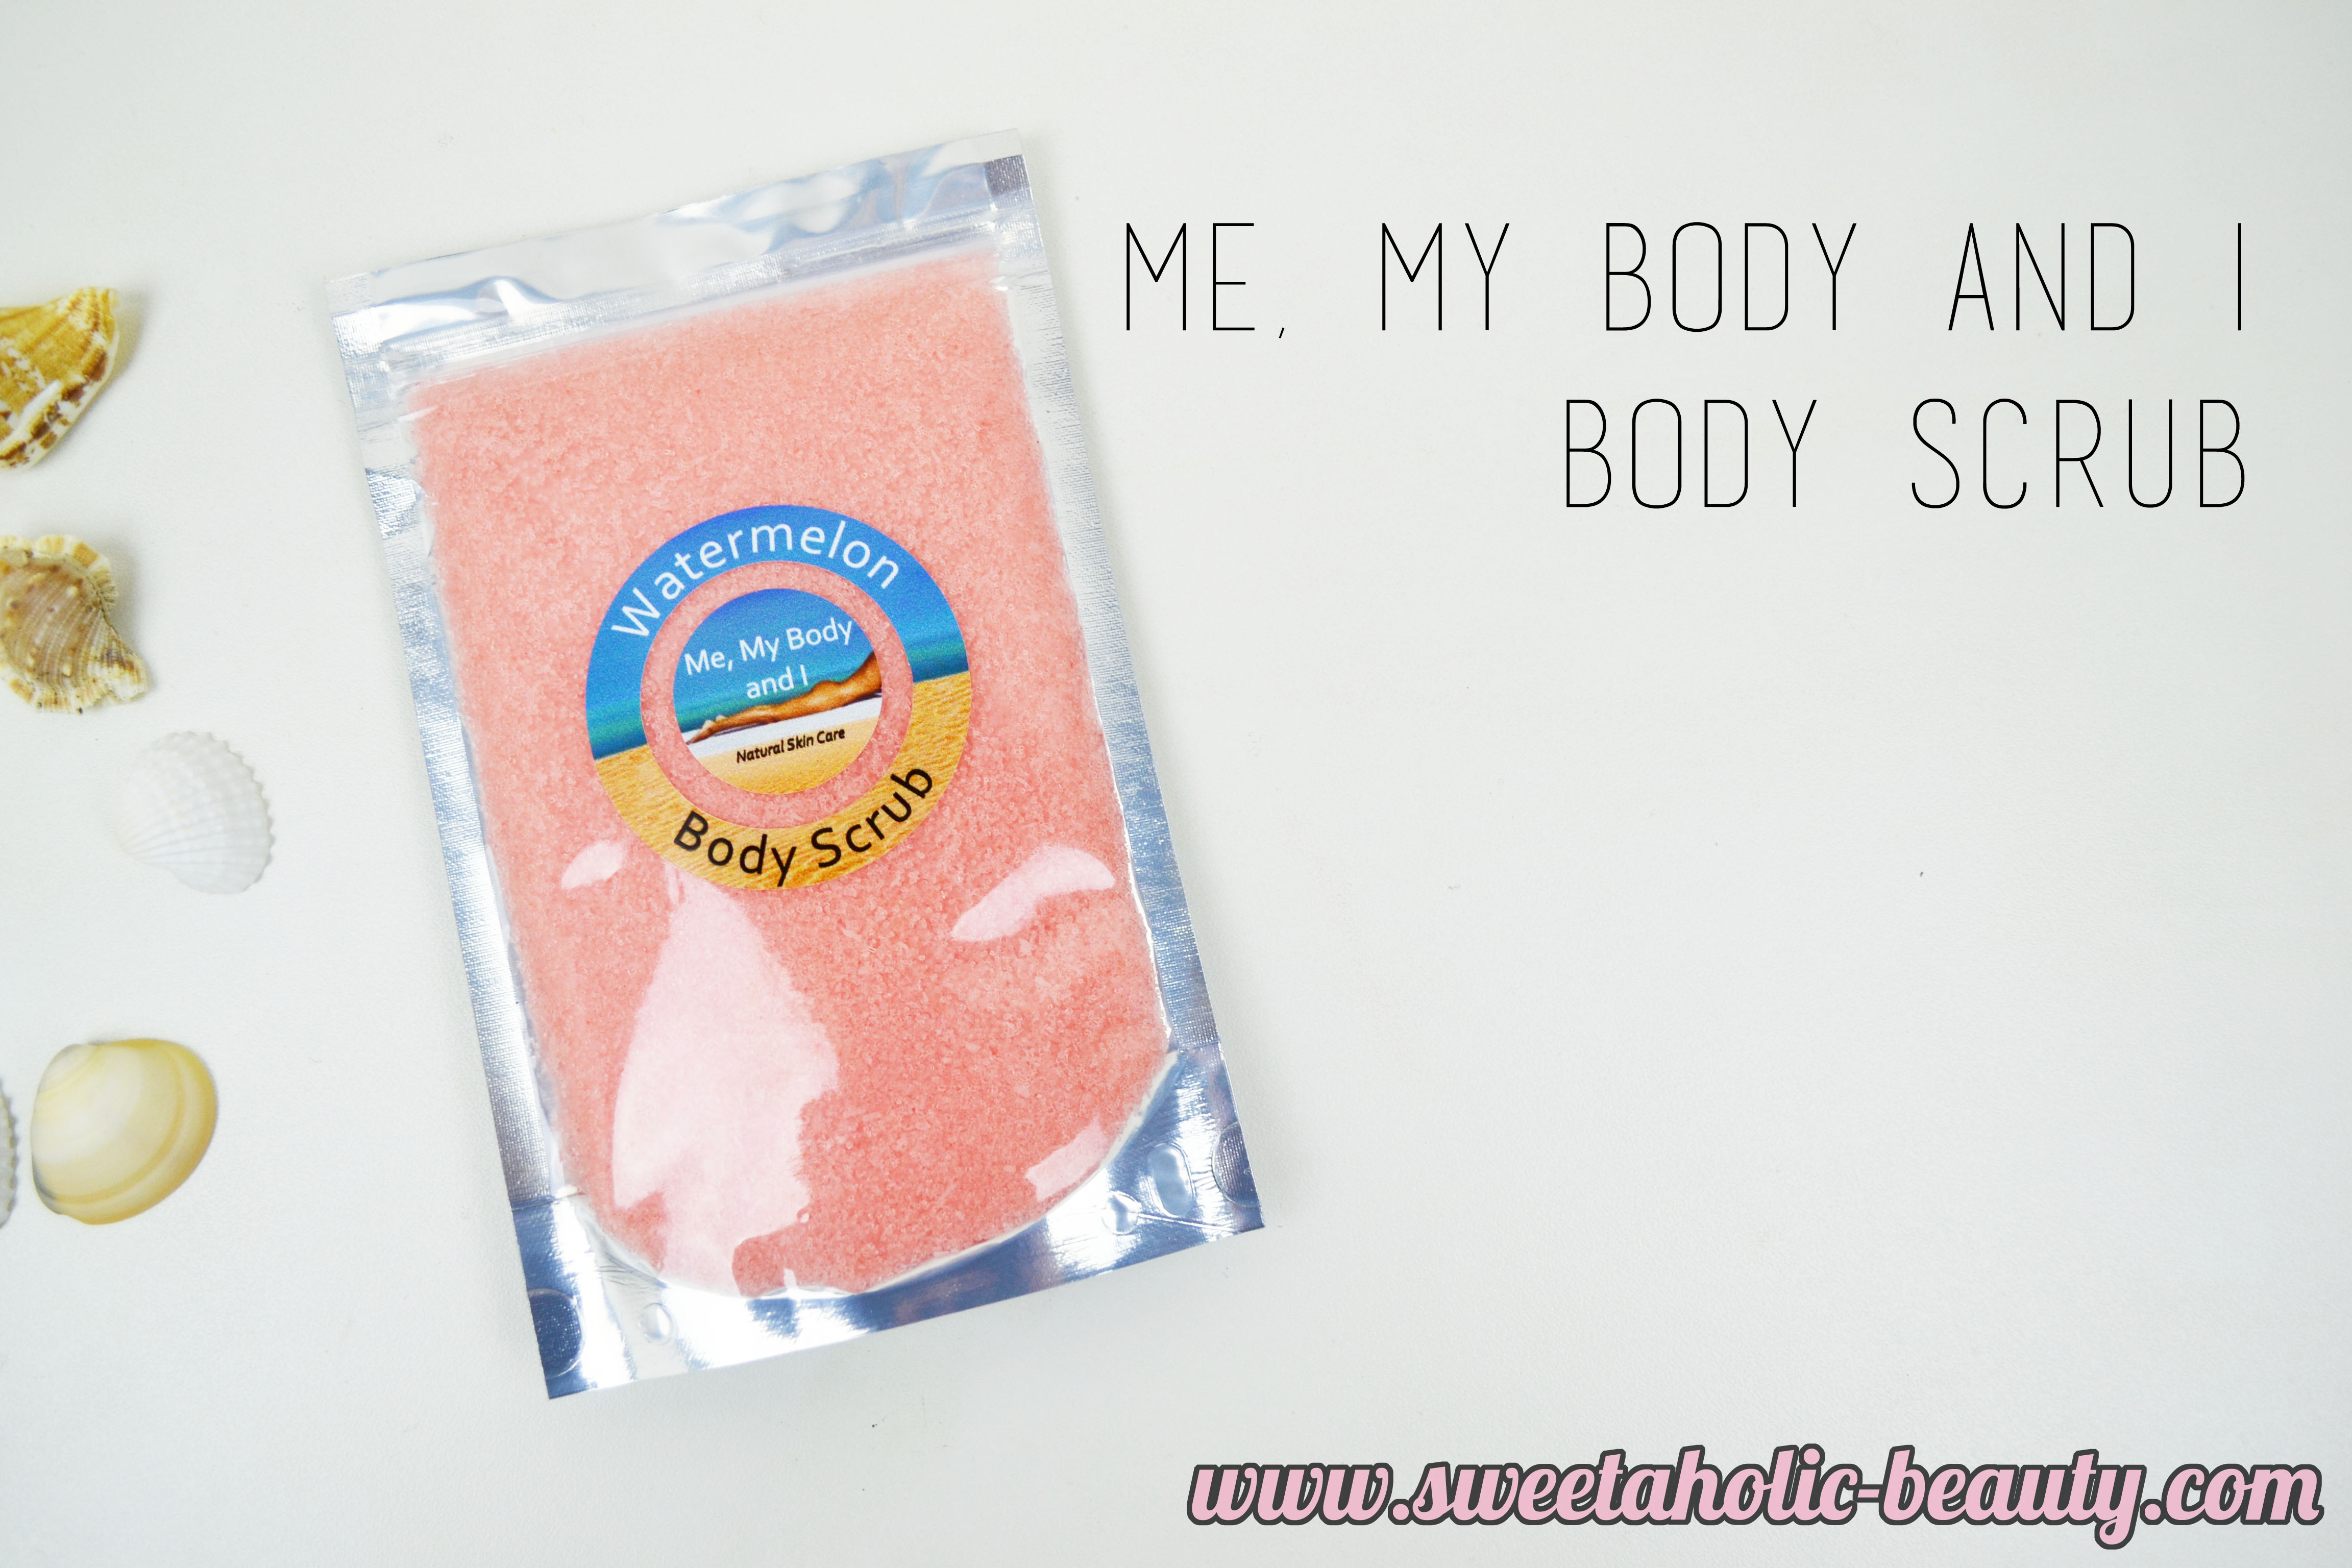 Me, My Body & I Body Scrub in Watermelon Review - Sweetaholic Beauty